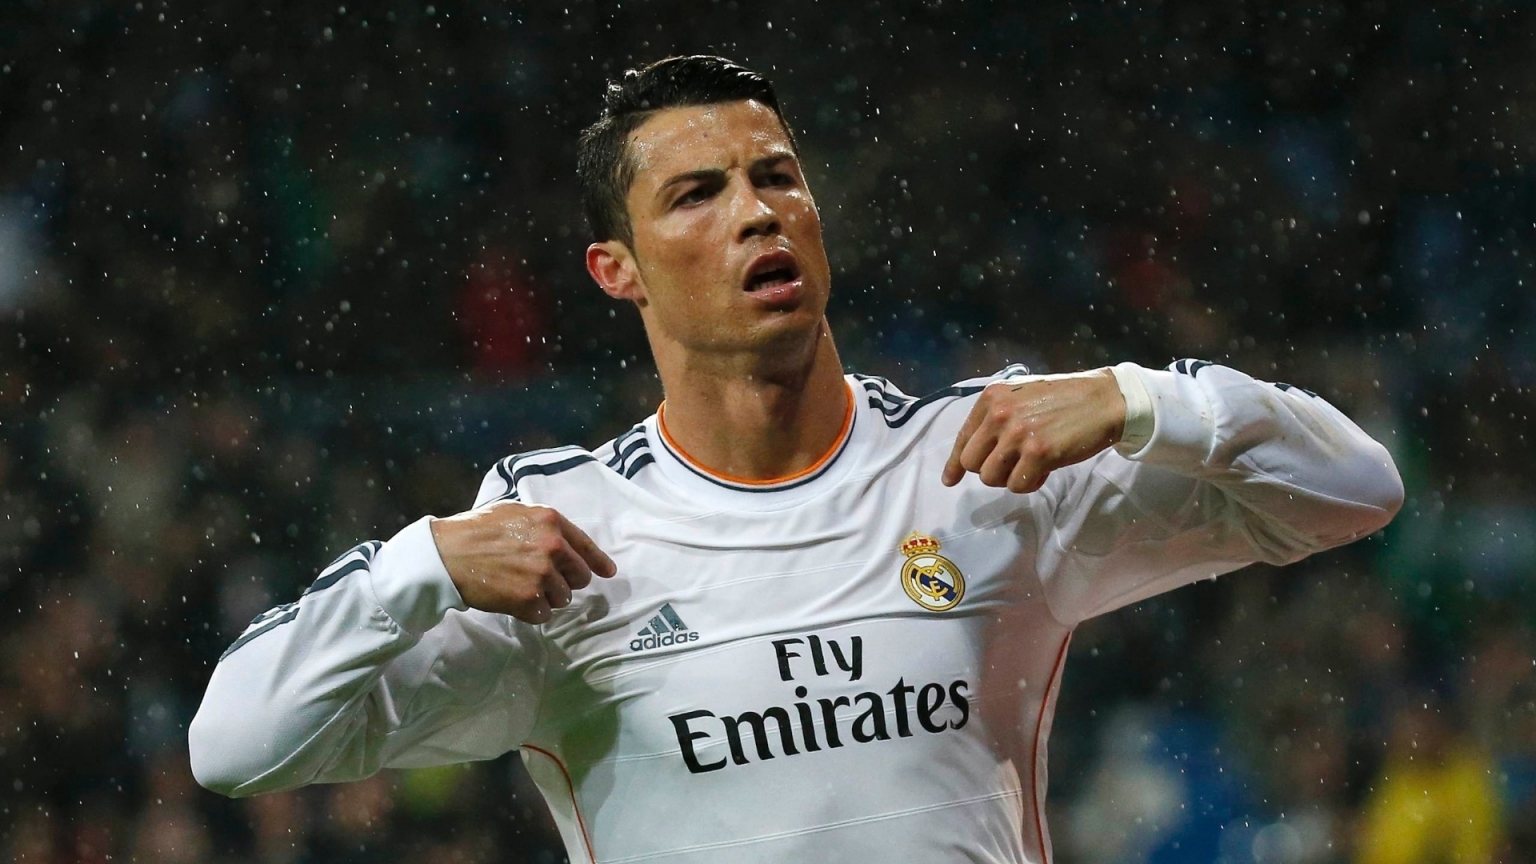 Cristiano Ronaldo in Rain for 1536 x 864 HDTV resolution